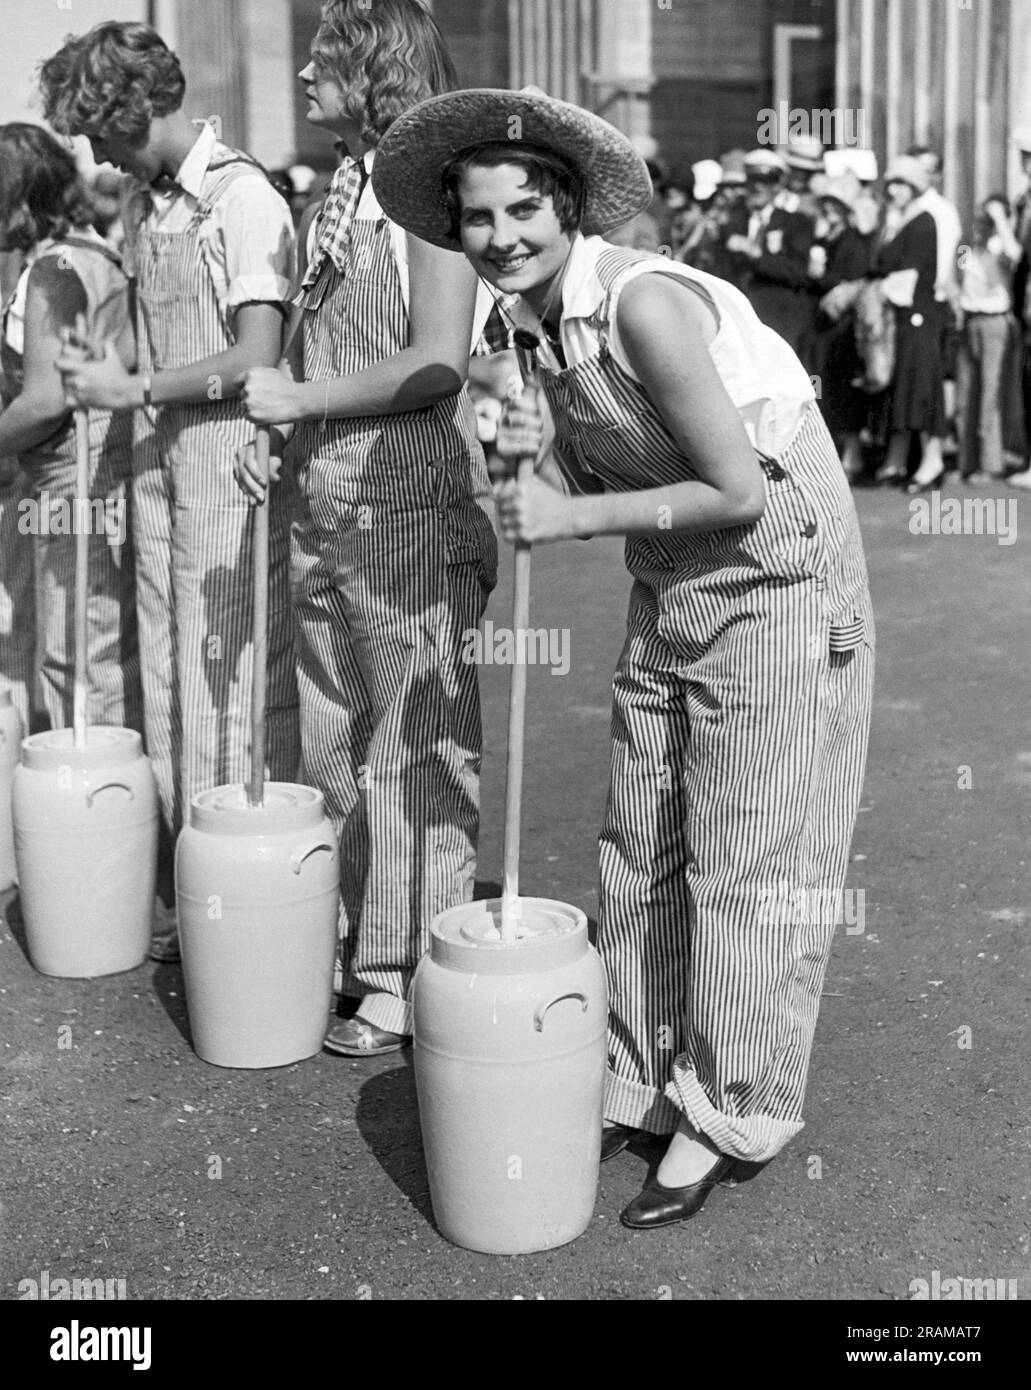 Pomona, Californie: c. 1930 Lucille Gates est le vainqueur cette année des championnats d'American Farm Girl qui se tiennent à la foire du comté de Los Angeles. Ici, elle est en action pendant l'événement de beurre de churning. Banque D'Images